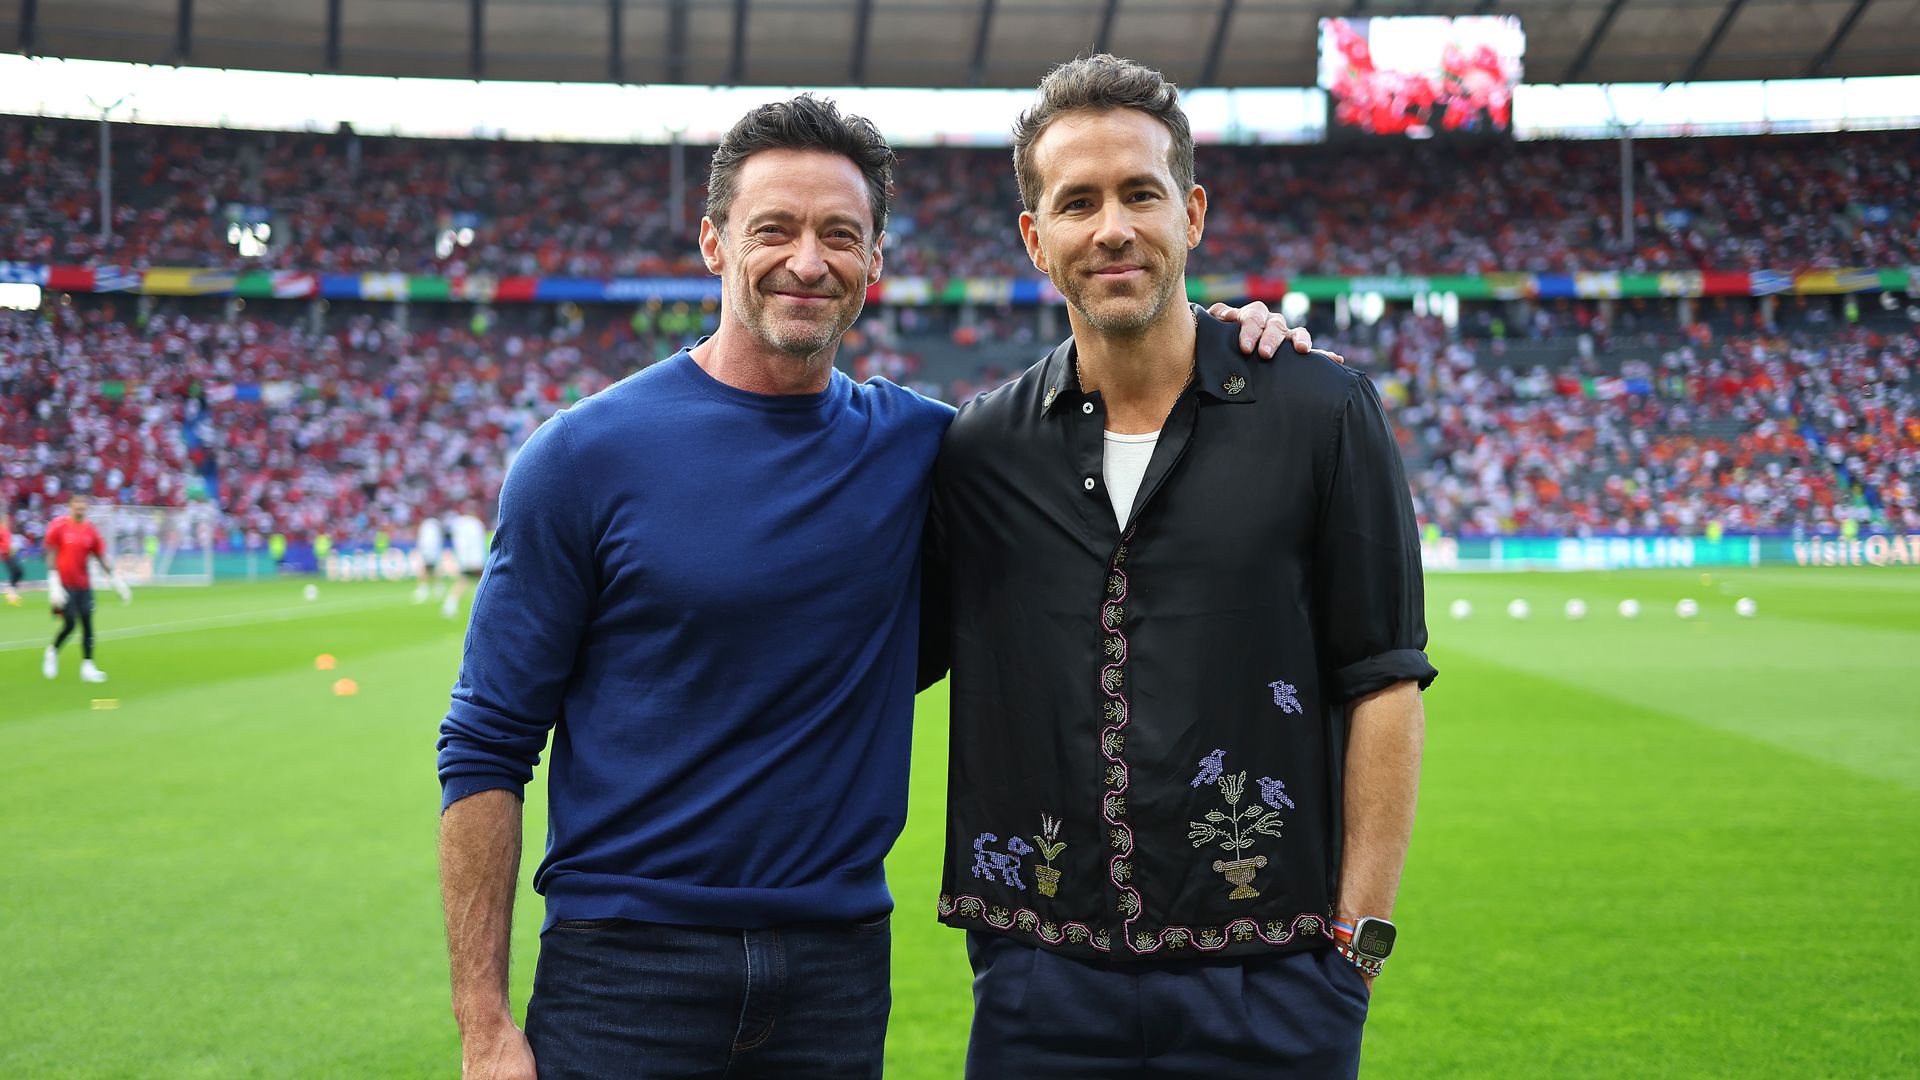 El inesperado apoyo de Hugh Jackman y Ryan Reynolds a La Roja, que se juega hoy el pase a la final de la Eurocopa